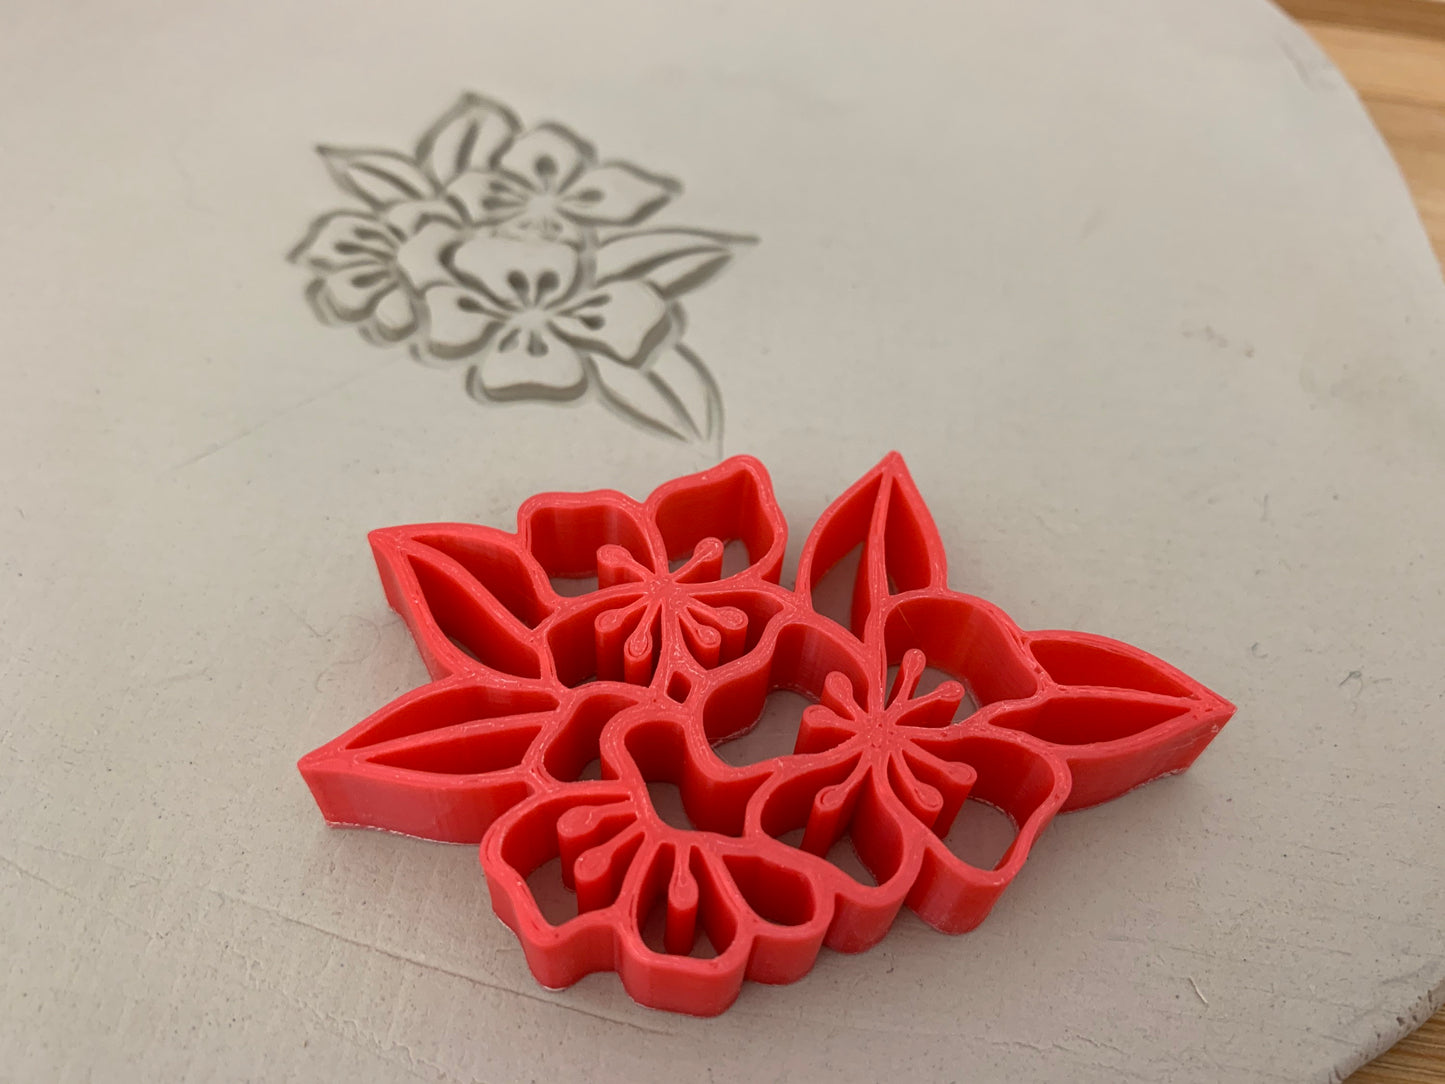 Pottery Stamp, Cherry Blossom flower design - multiple sizes